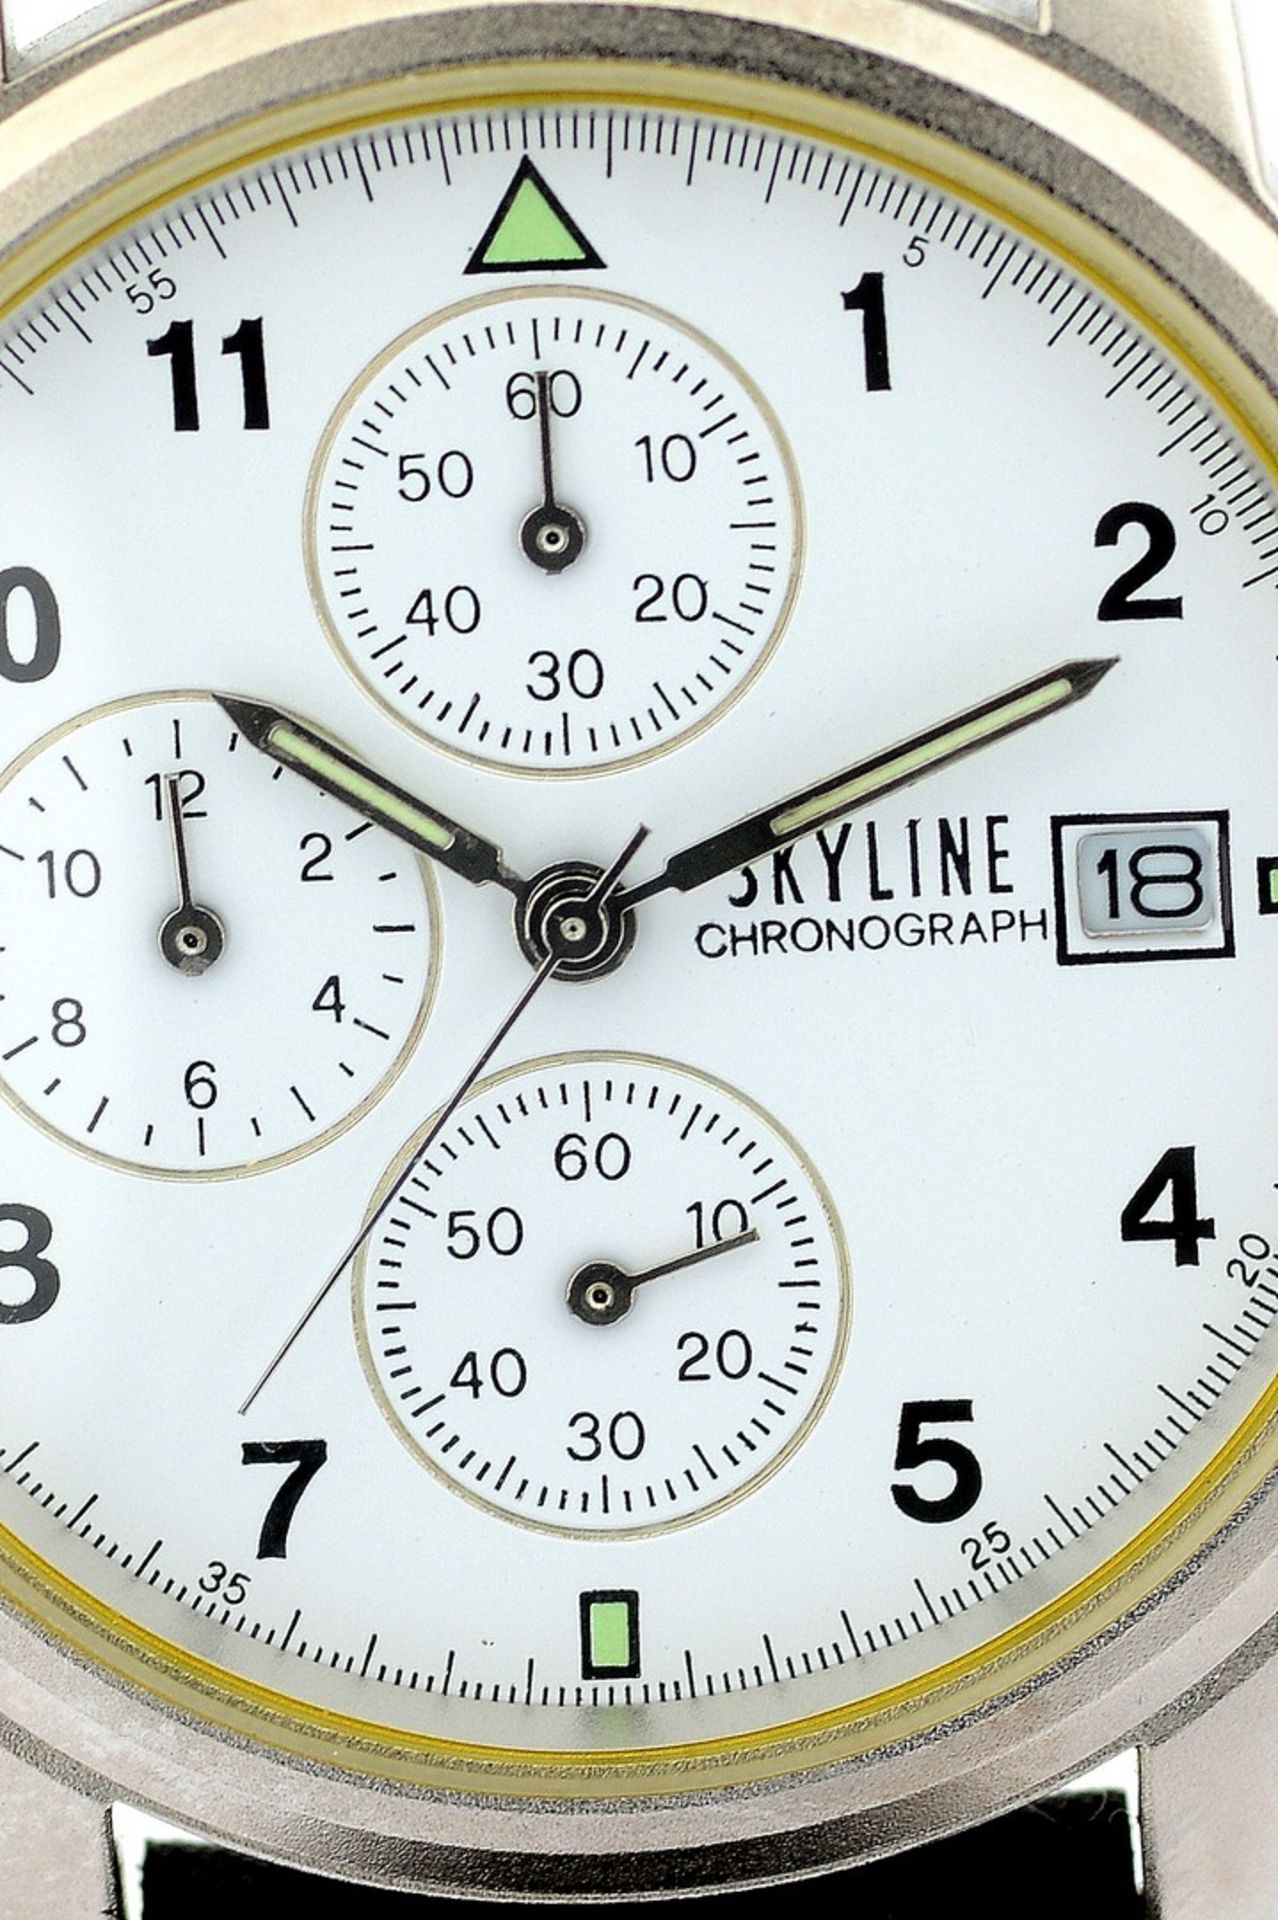 Mondaine / SKYLINE Chronograph Date - (Unworn) Gentlemen's Steel Wrist Watch - Image 3 of 8